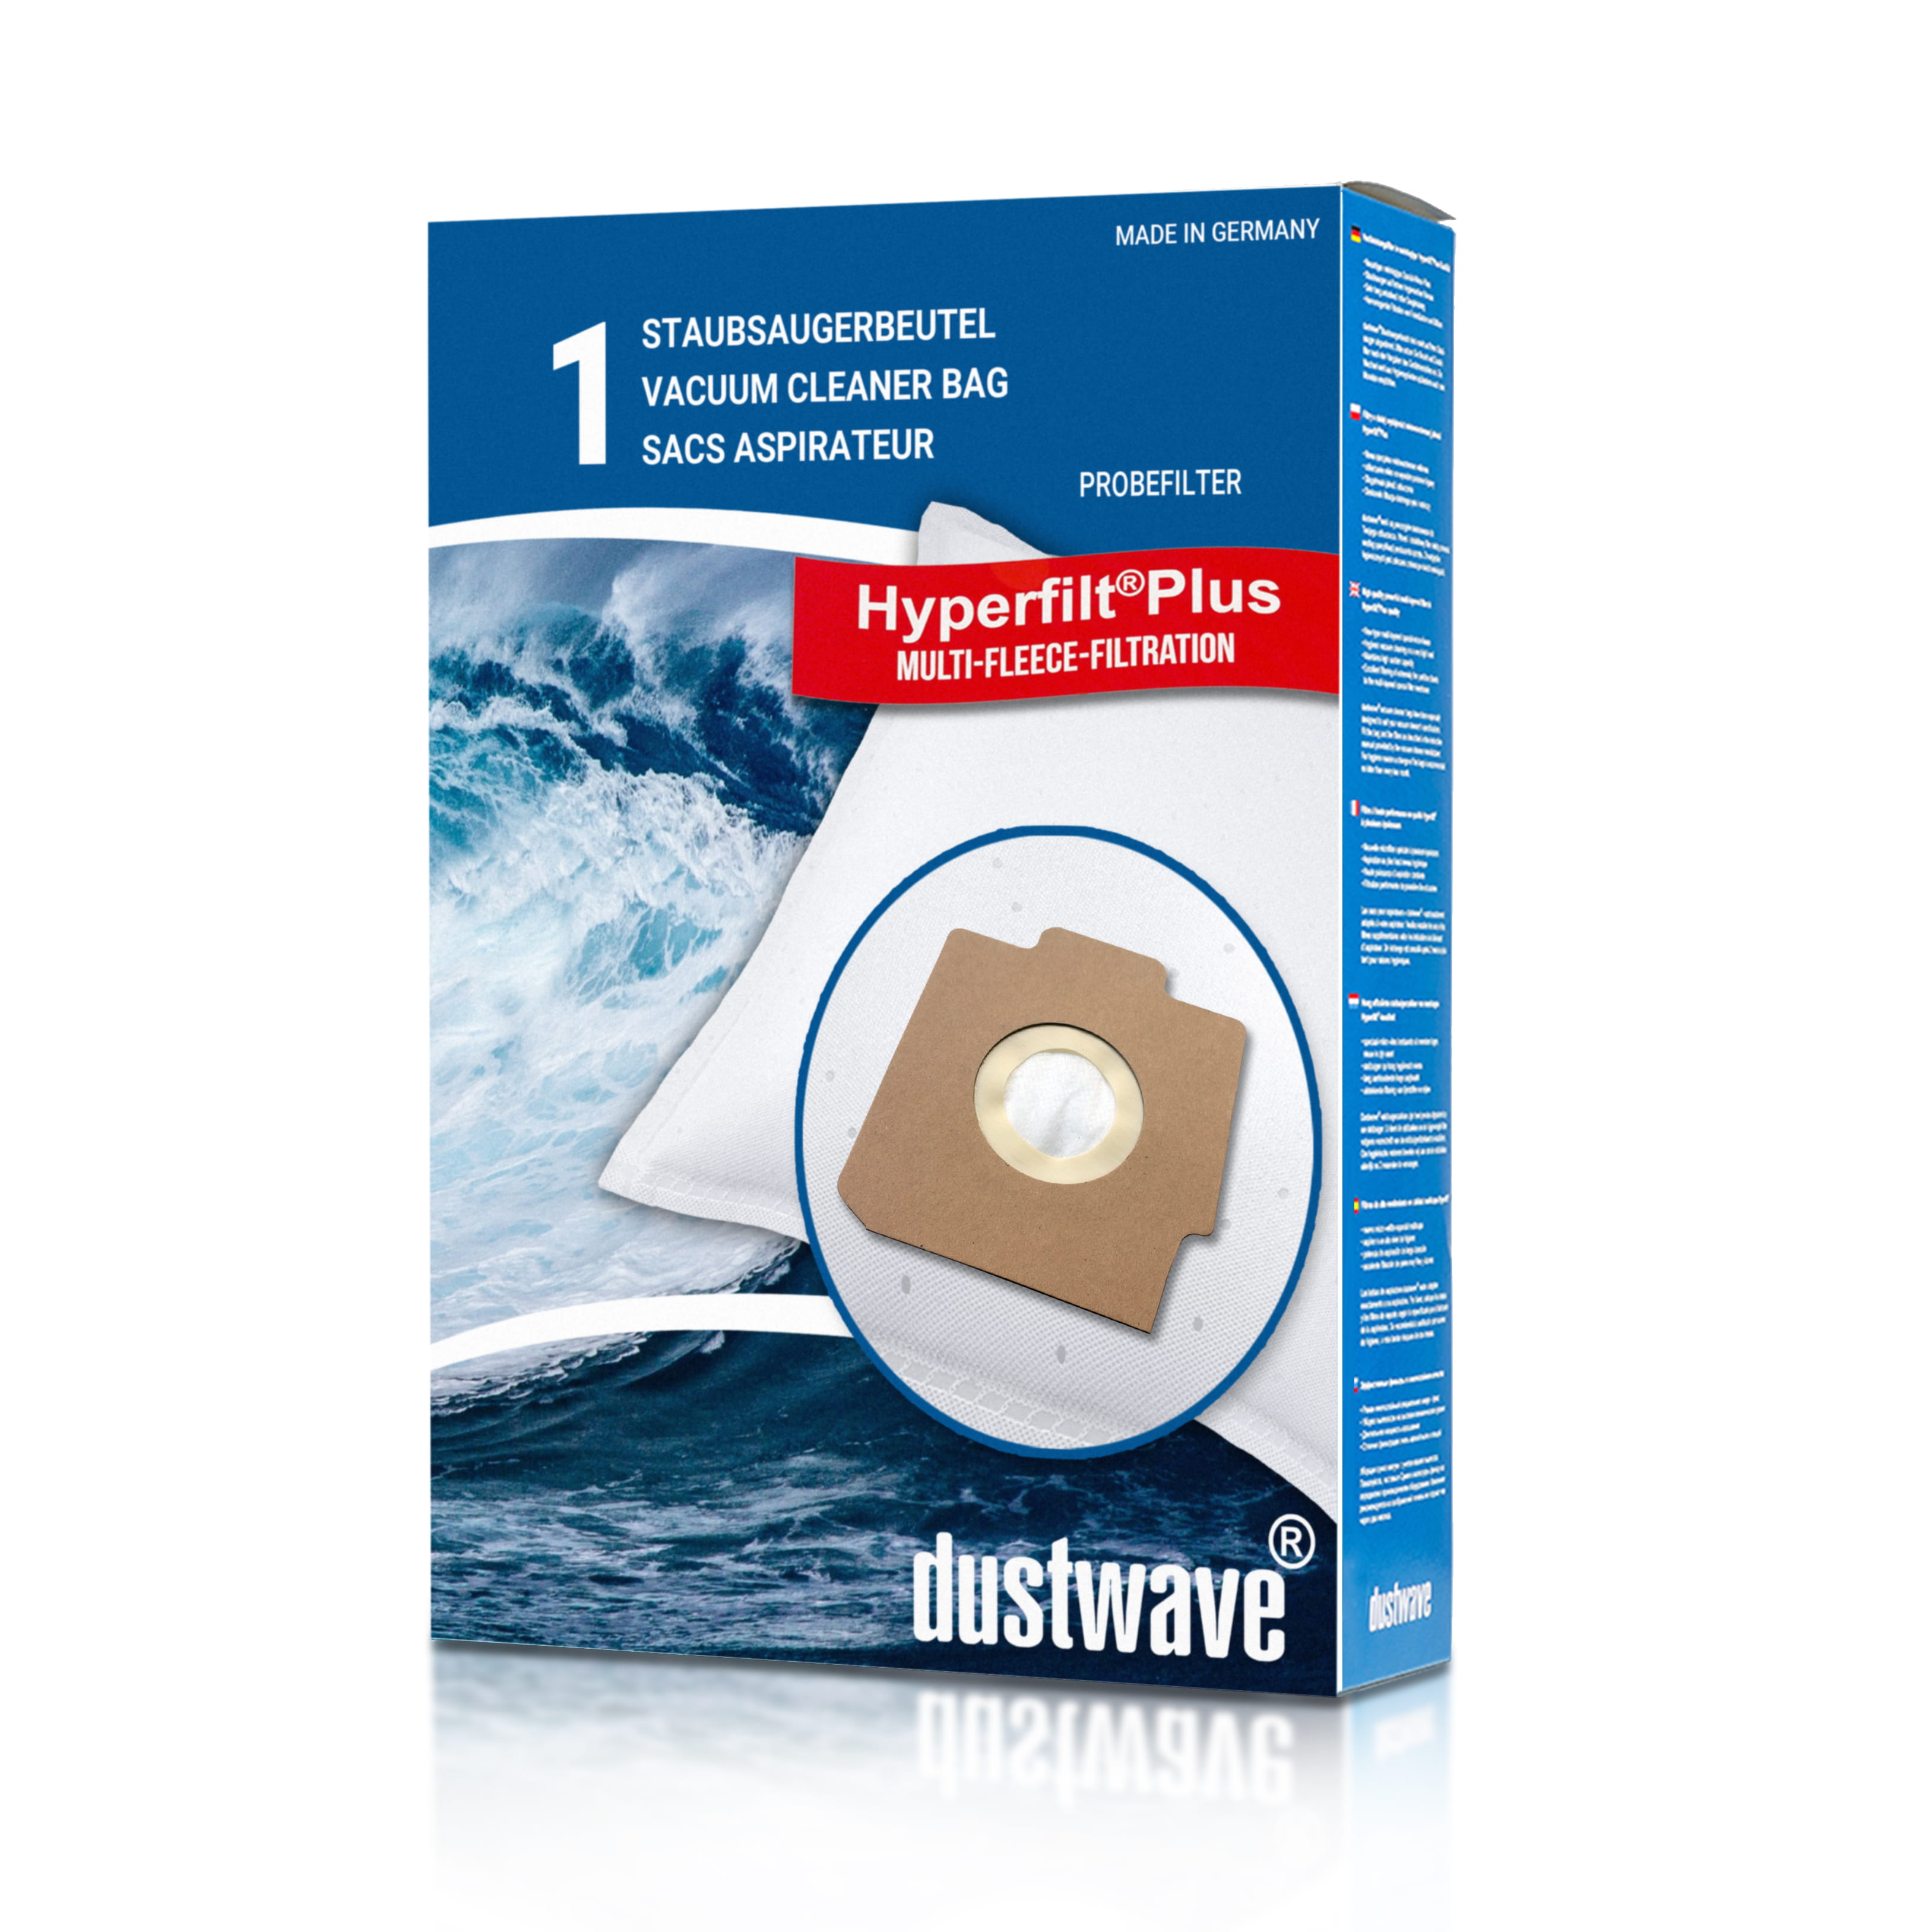 Dustwave® 1 Staubsaugerbeutel für AUDIO S 3762 - hocheffizient, mehrlagiges Mikrovlies mit Hygieneverschluss - Made in Germany